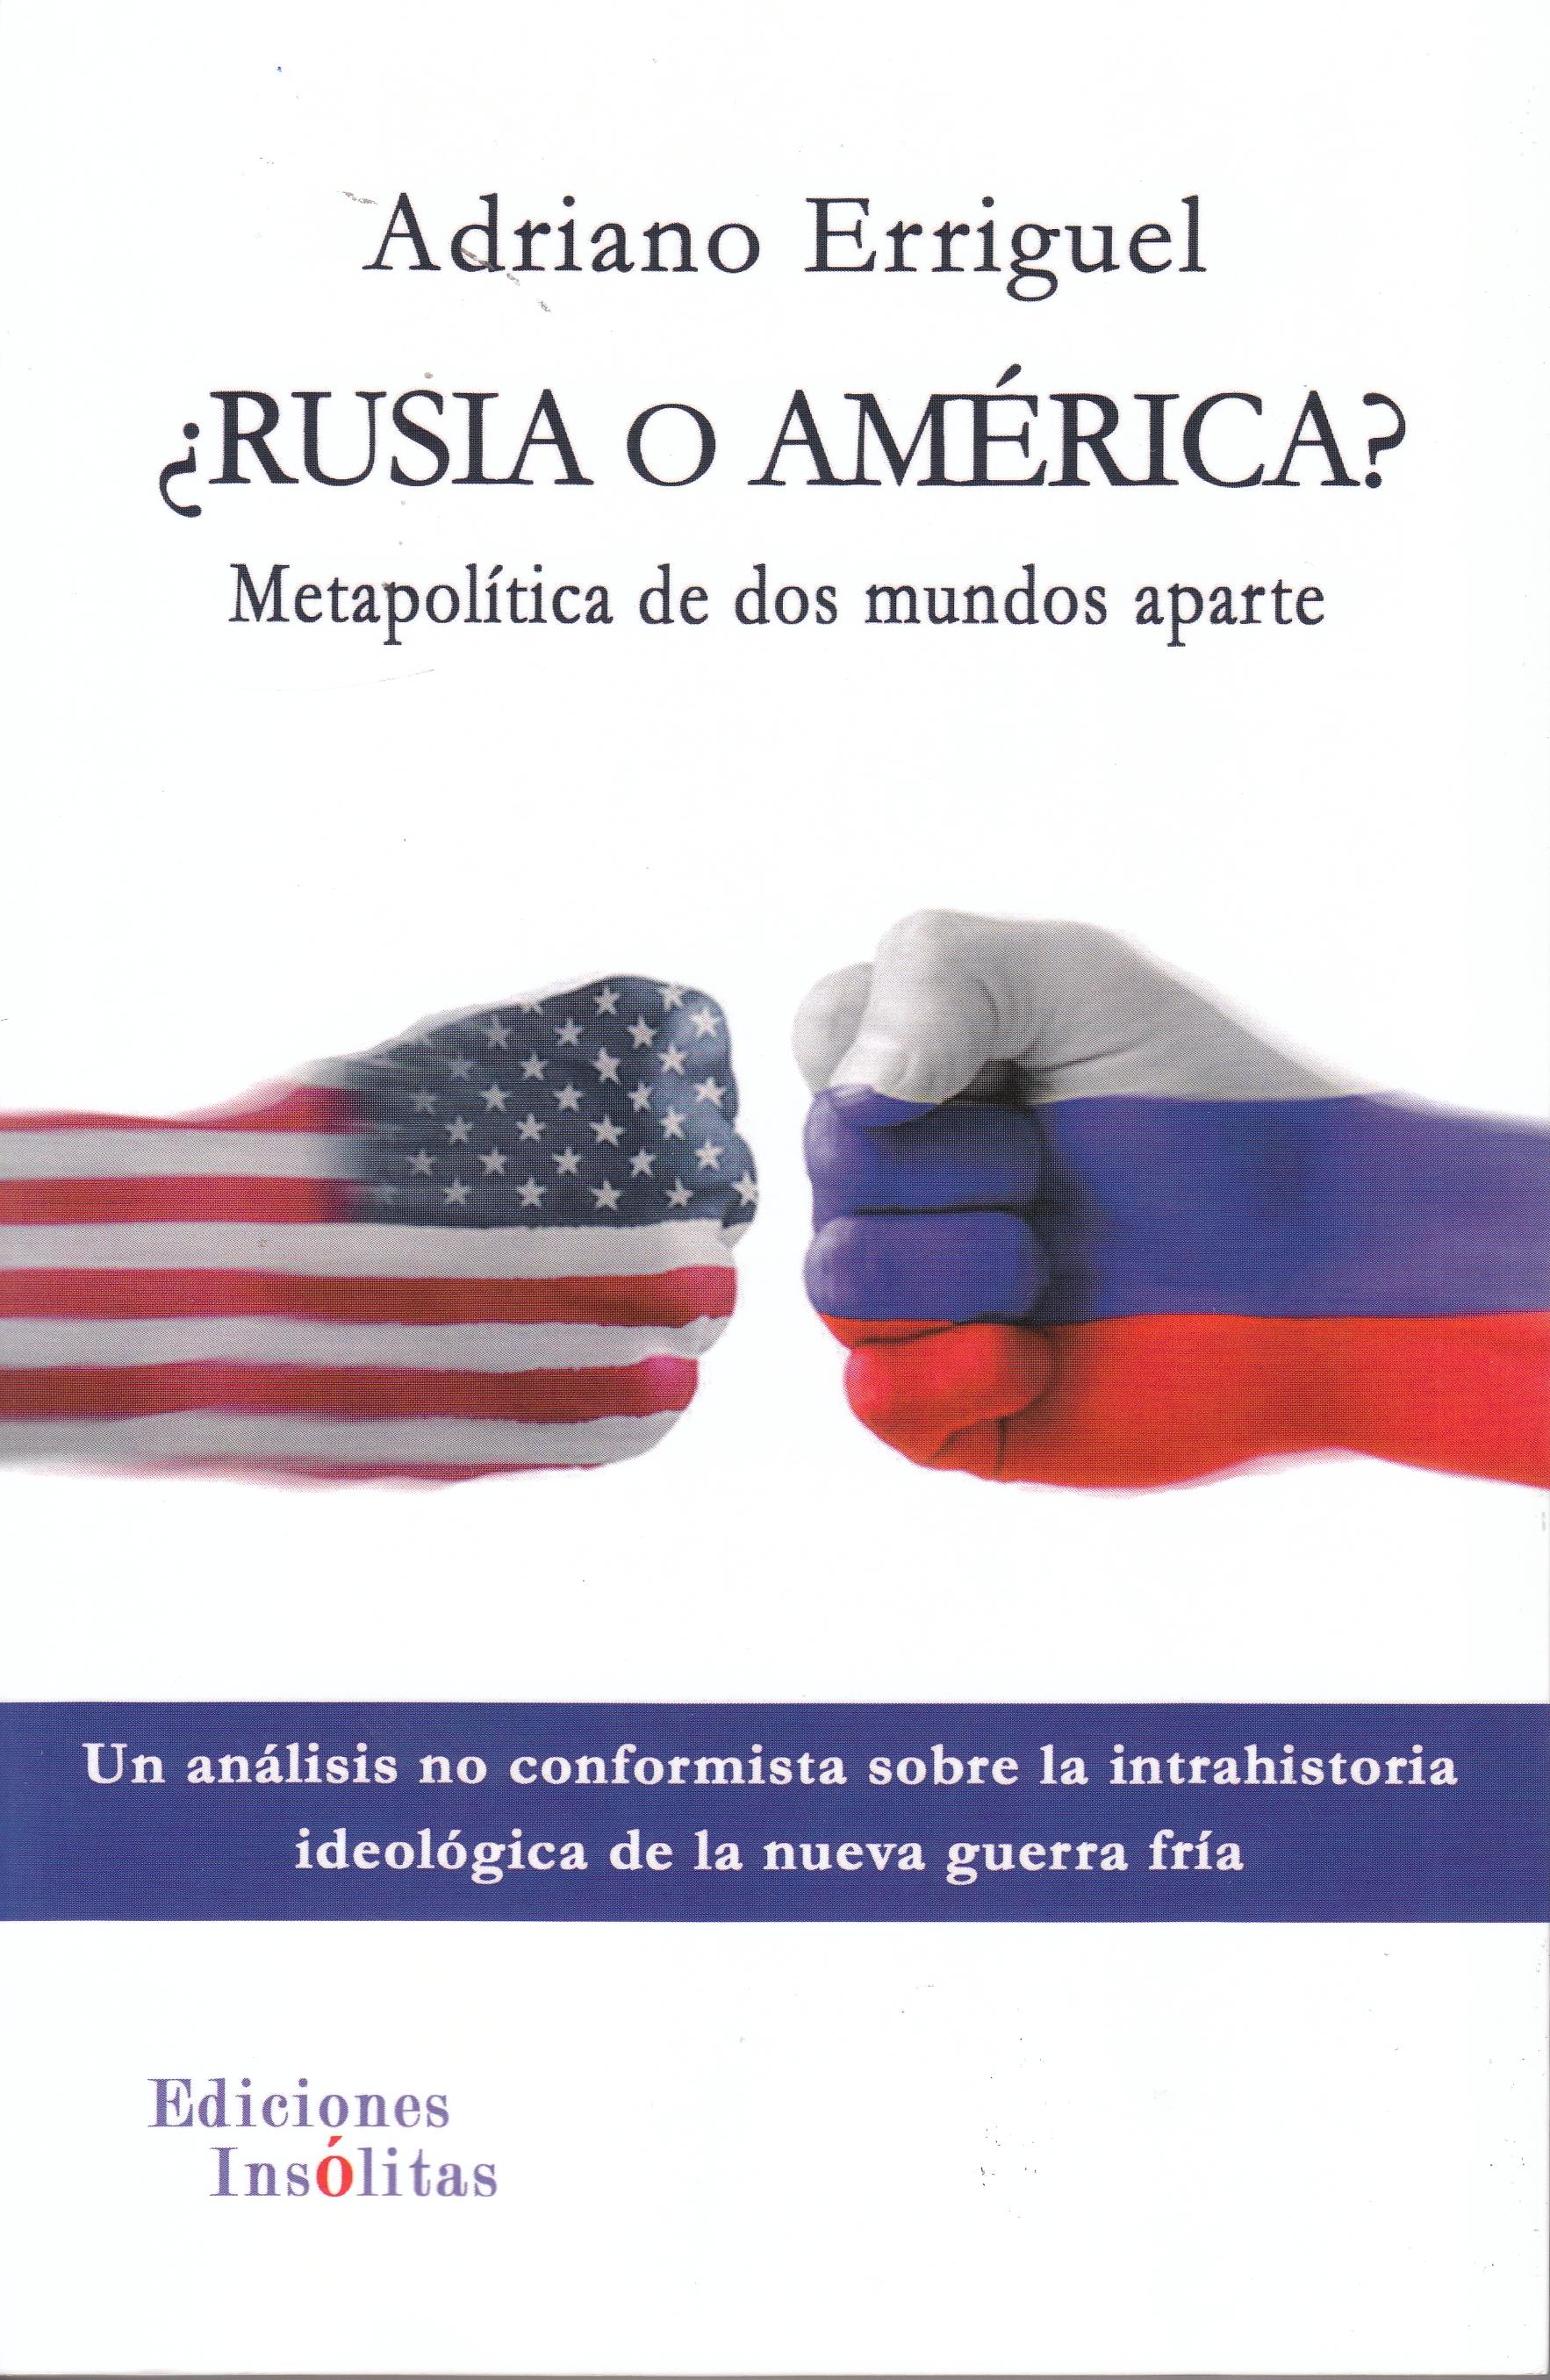 ¿Rusia o América? "Metapolítica de dos mundos aparte"